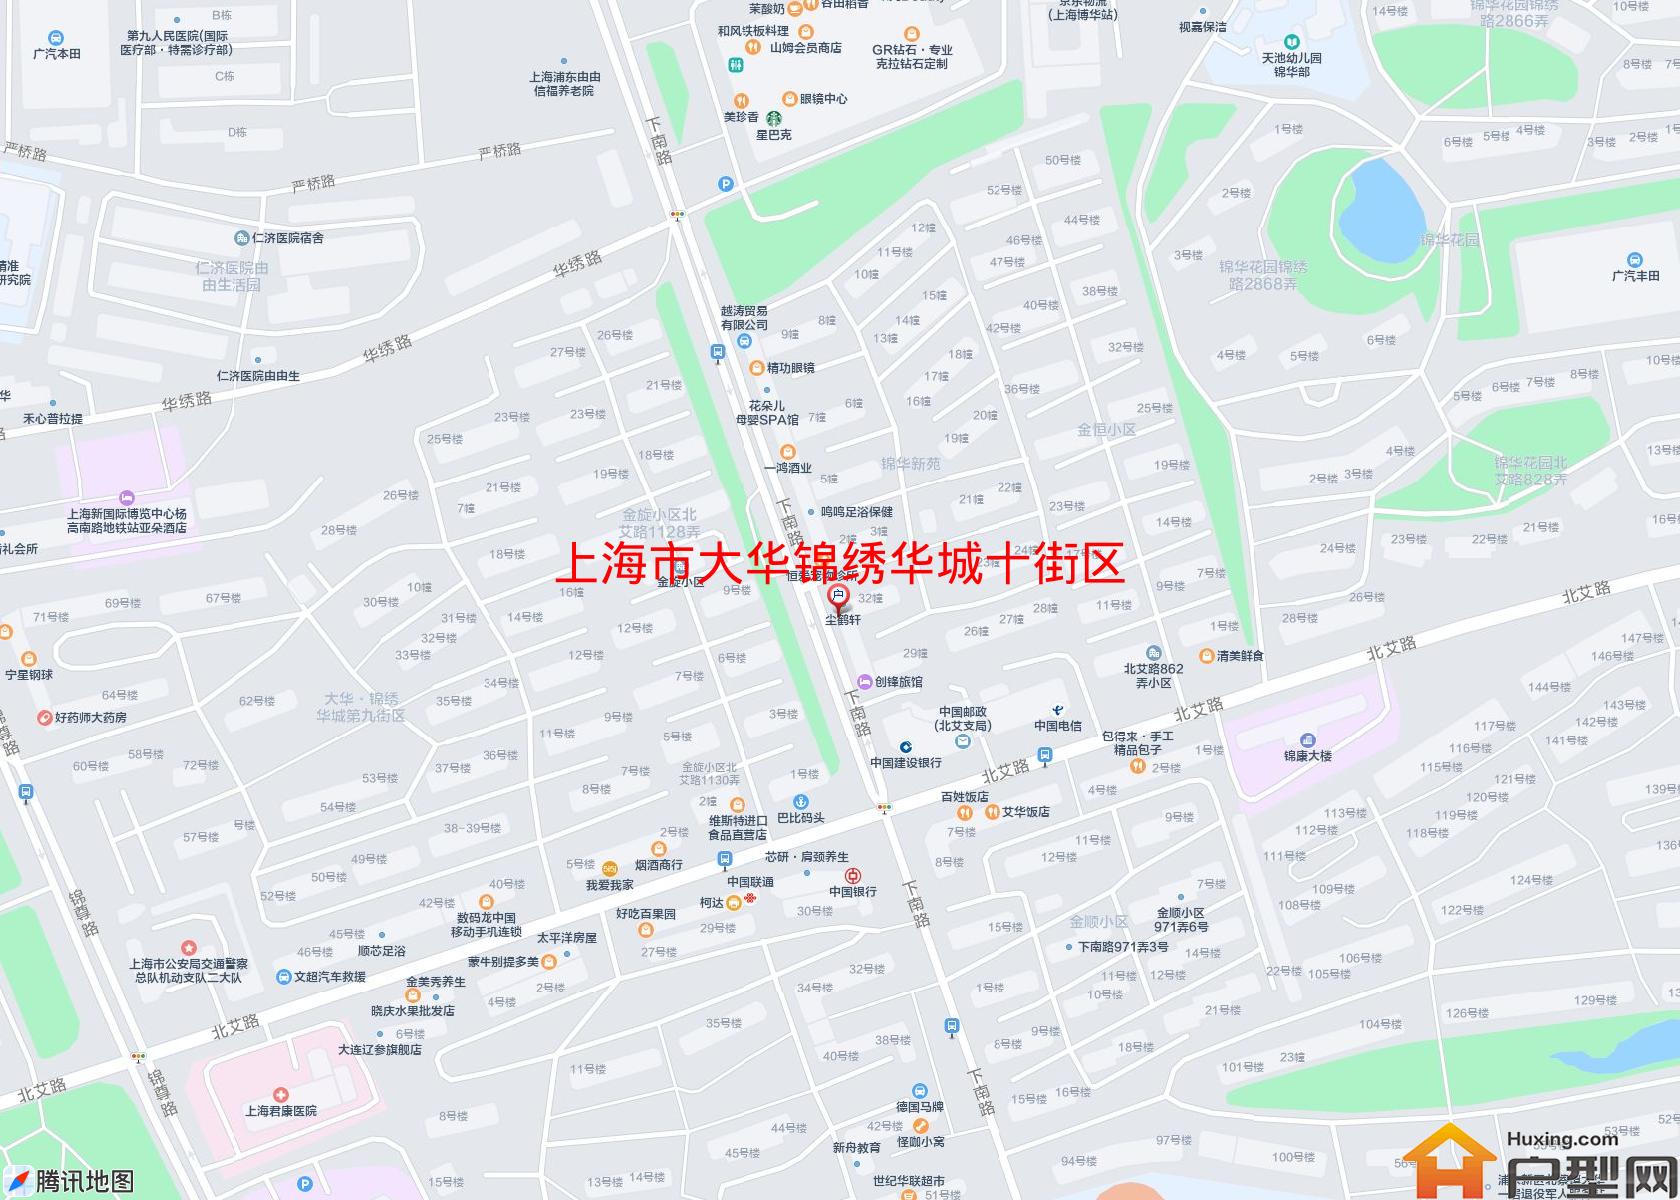 大华锦绣华城十街区小区 - 户型网